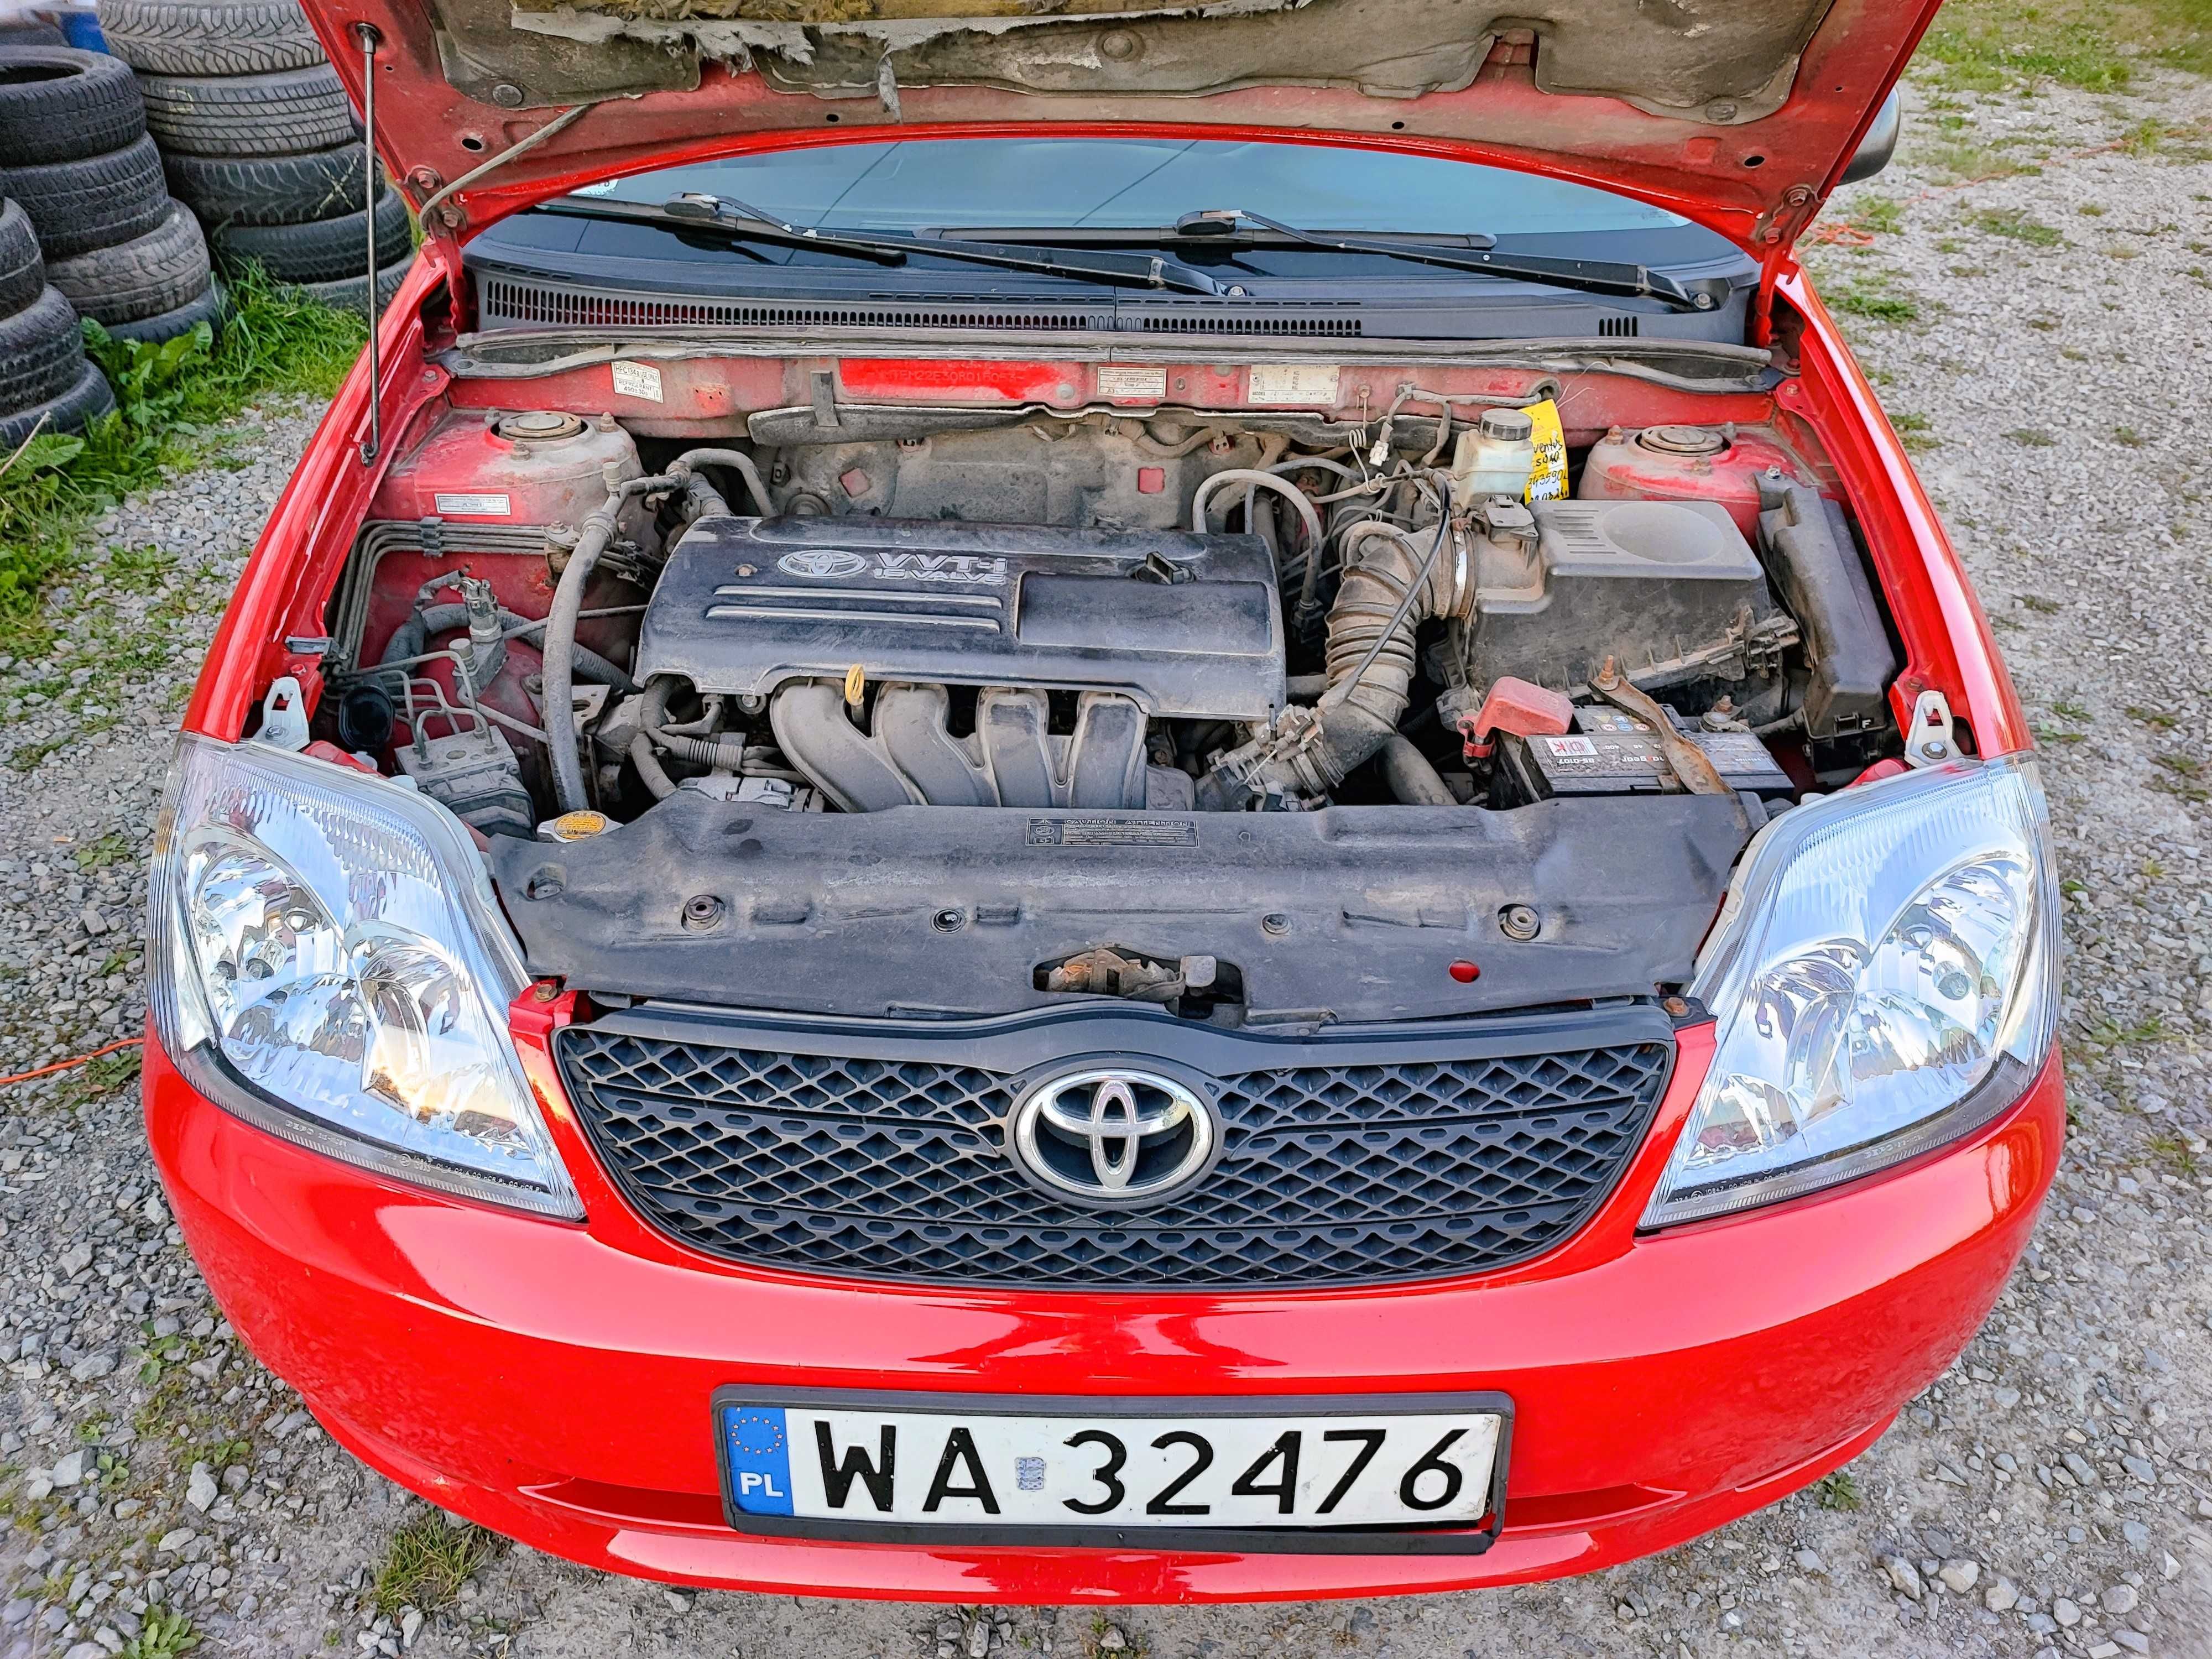 Toyota Corolla 1,4 VVT-i nowe opony, serwisowana, stan auta bdb